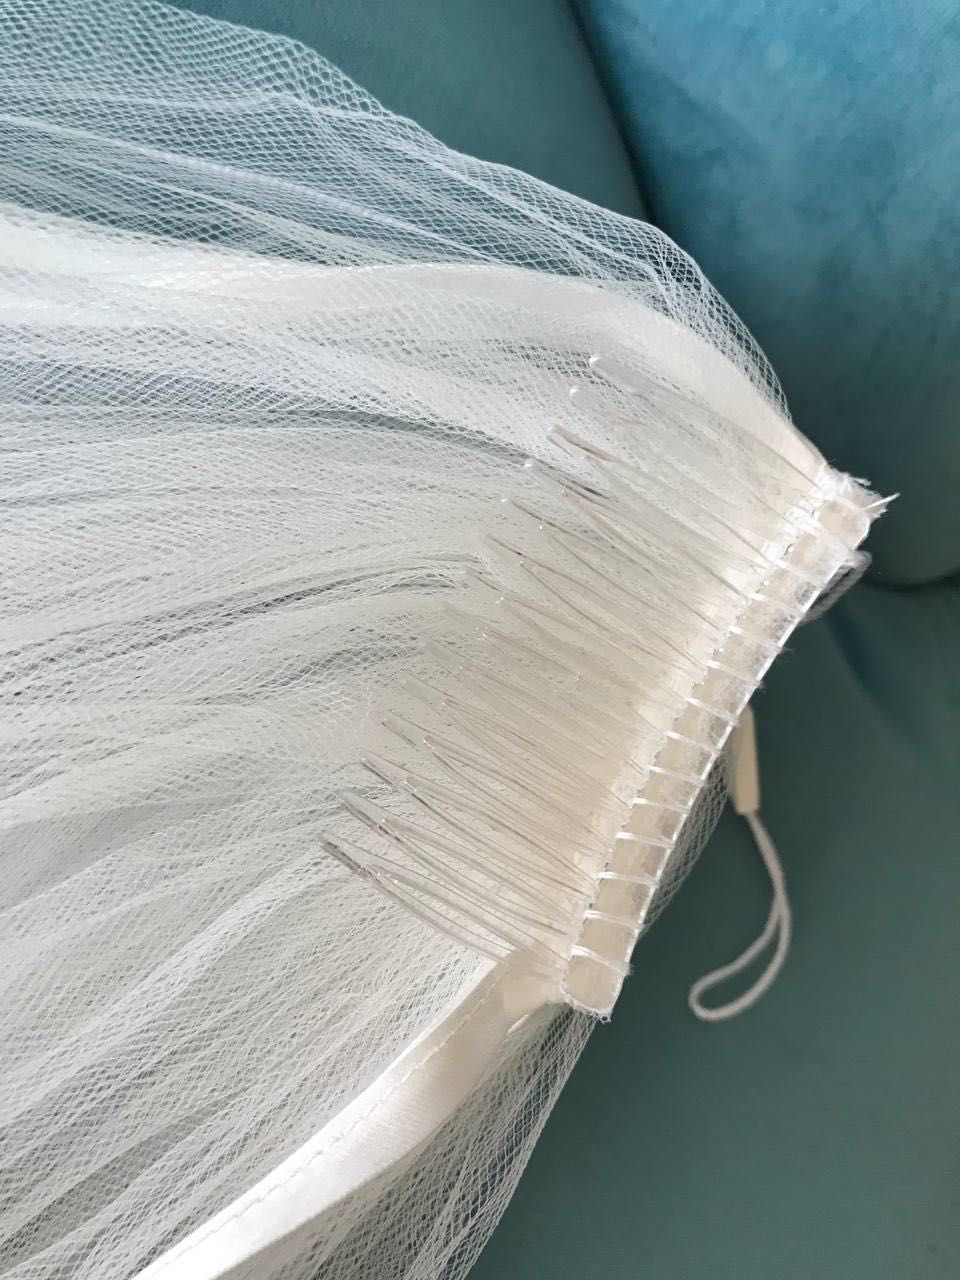 Весільна сукня нова